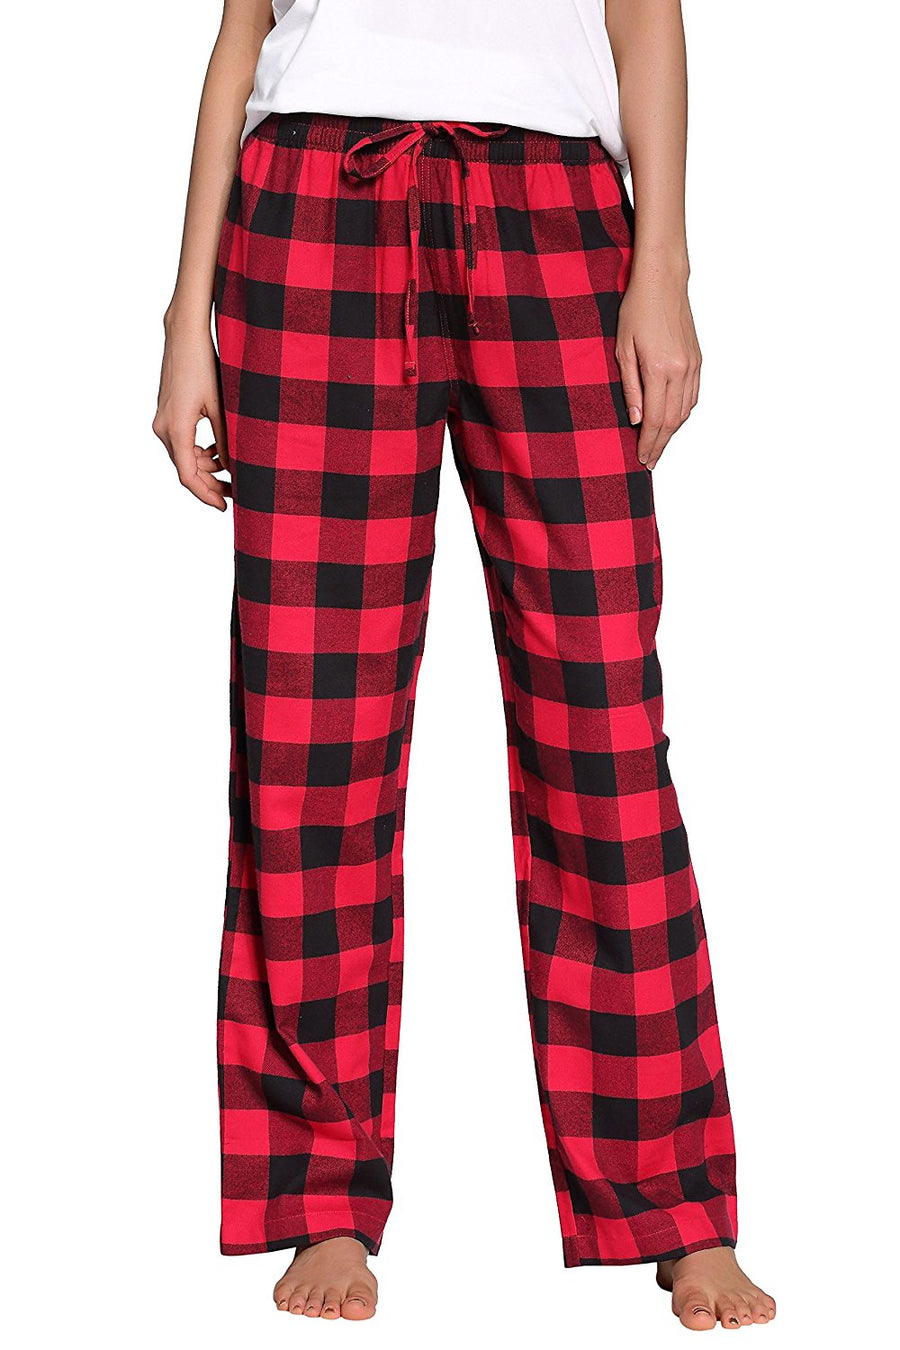 CYZ Women's 100% Cotton Super Soft Flannel Plaid Pajama/Louge Pants ...